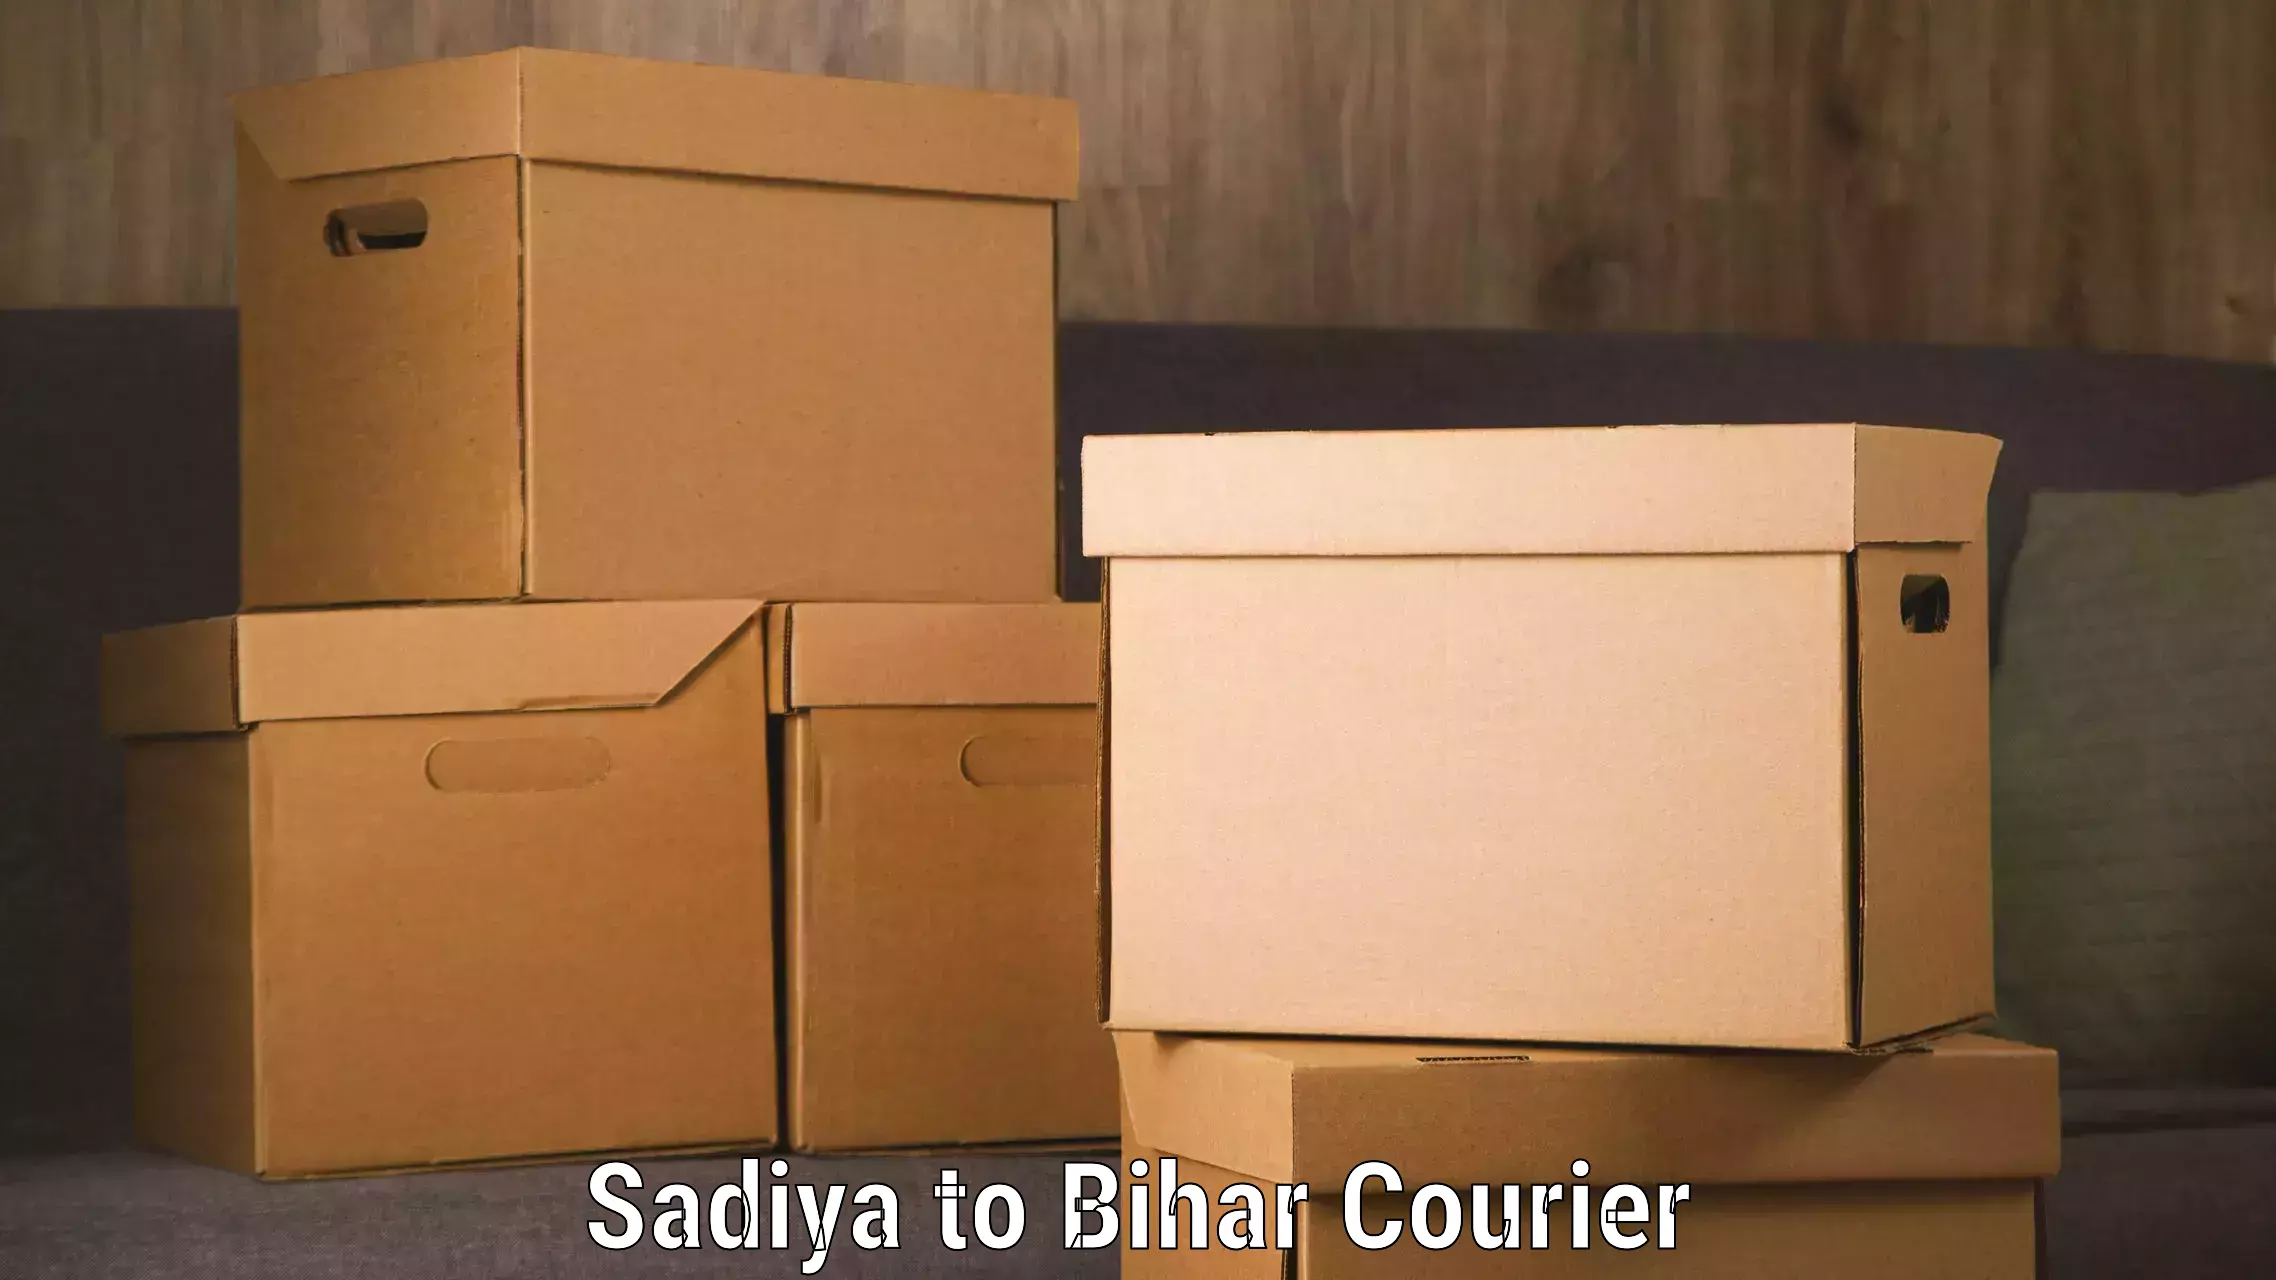 Door-to-door baggage service Sadiya to Bihar